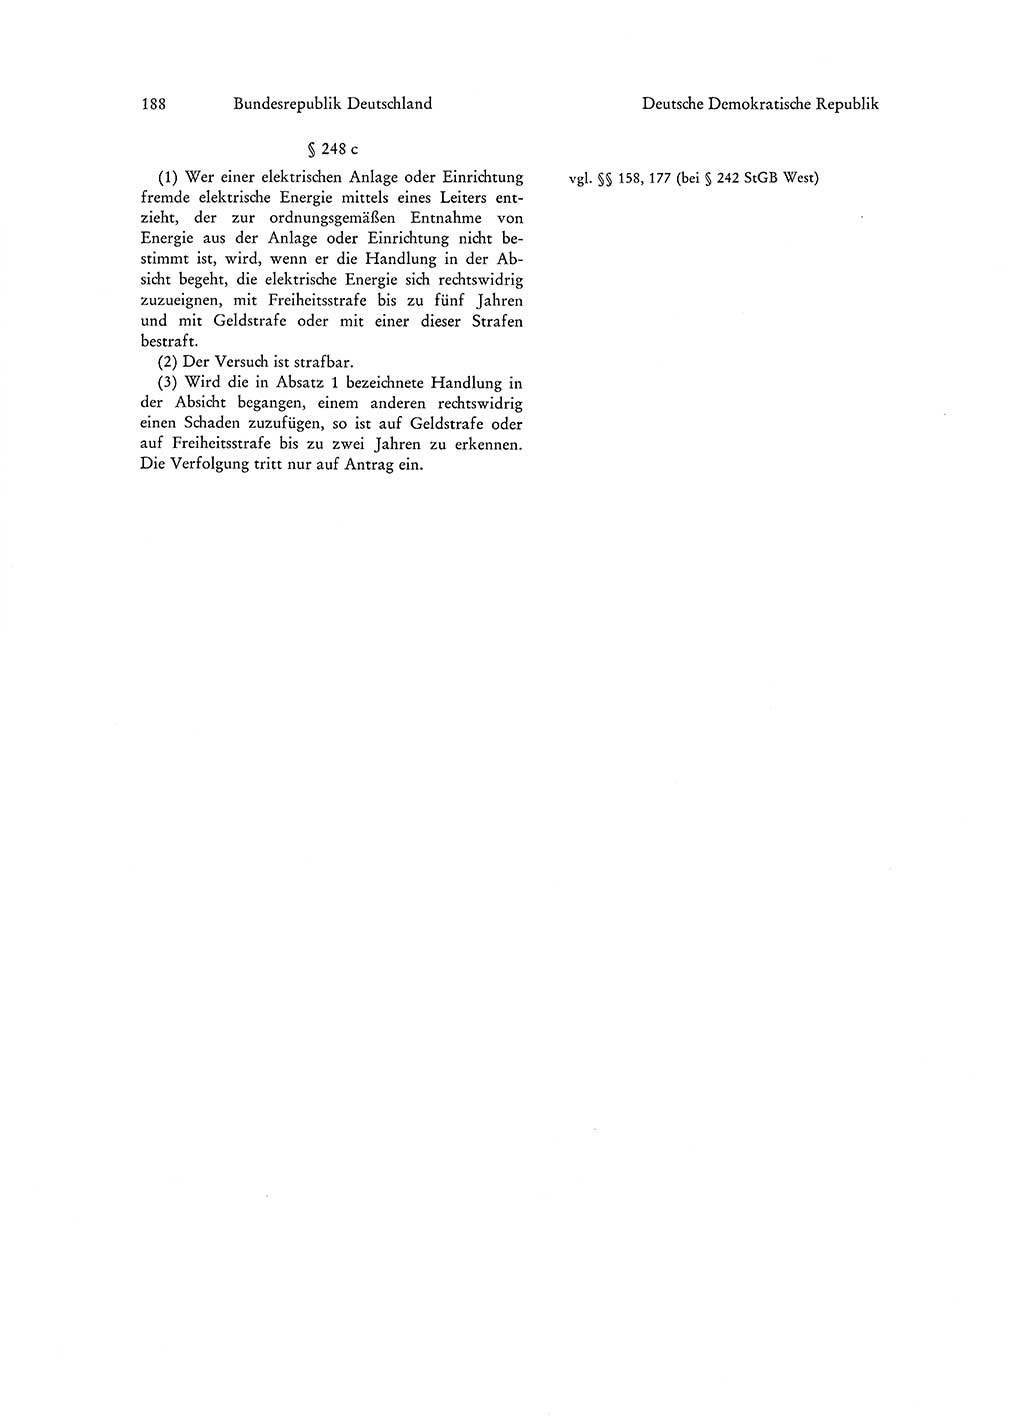 Strafgesetzgebung in Deutschland [Bundesrepublik Deutschland (BRD) und Deutsche Demokratische Republik (DDR)] 1972, Seite 188 (Str.-Ges. Dtl. StGB BRD DDR 1972, S. 188)